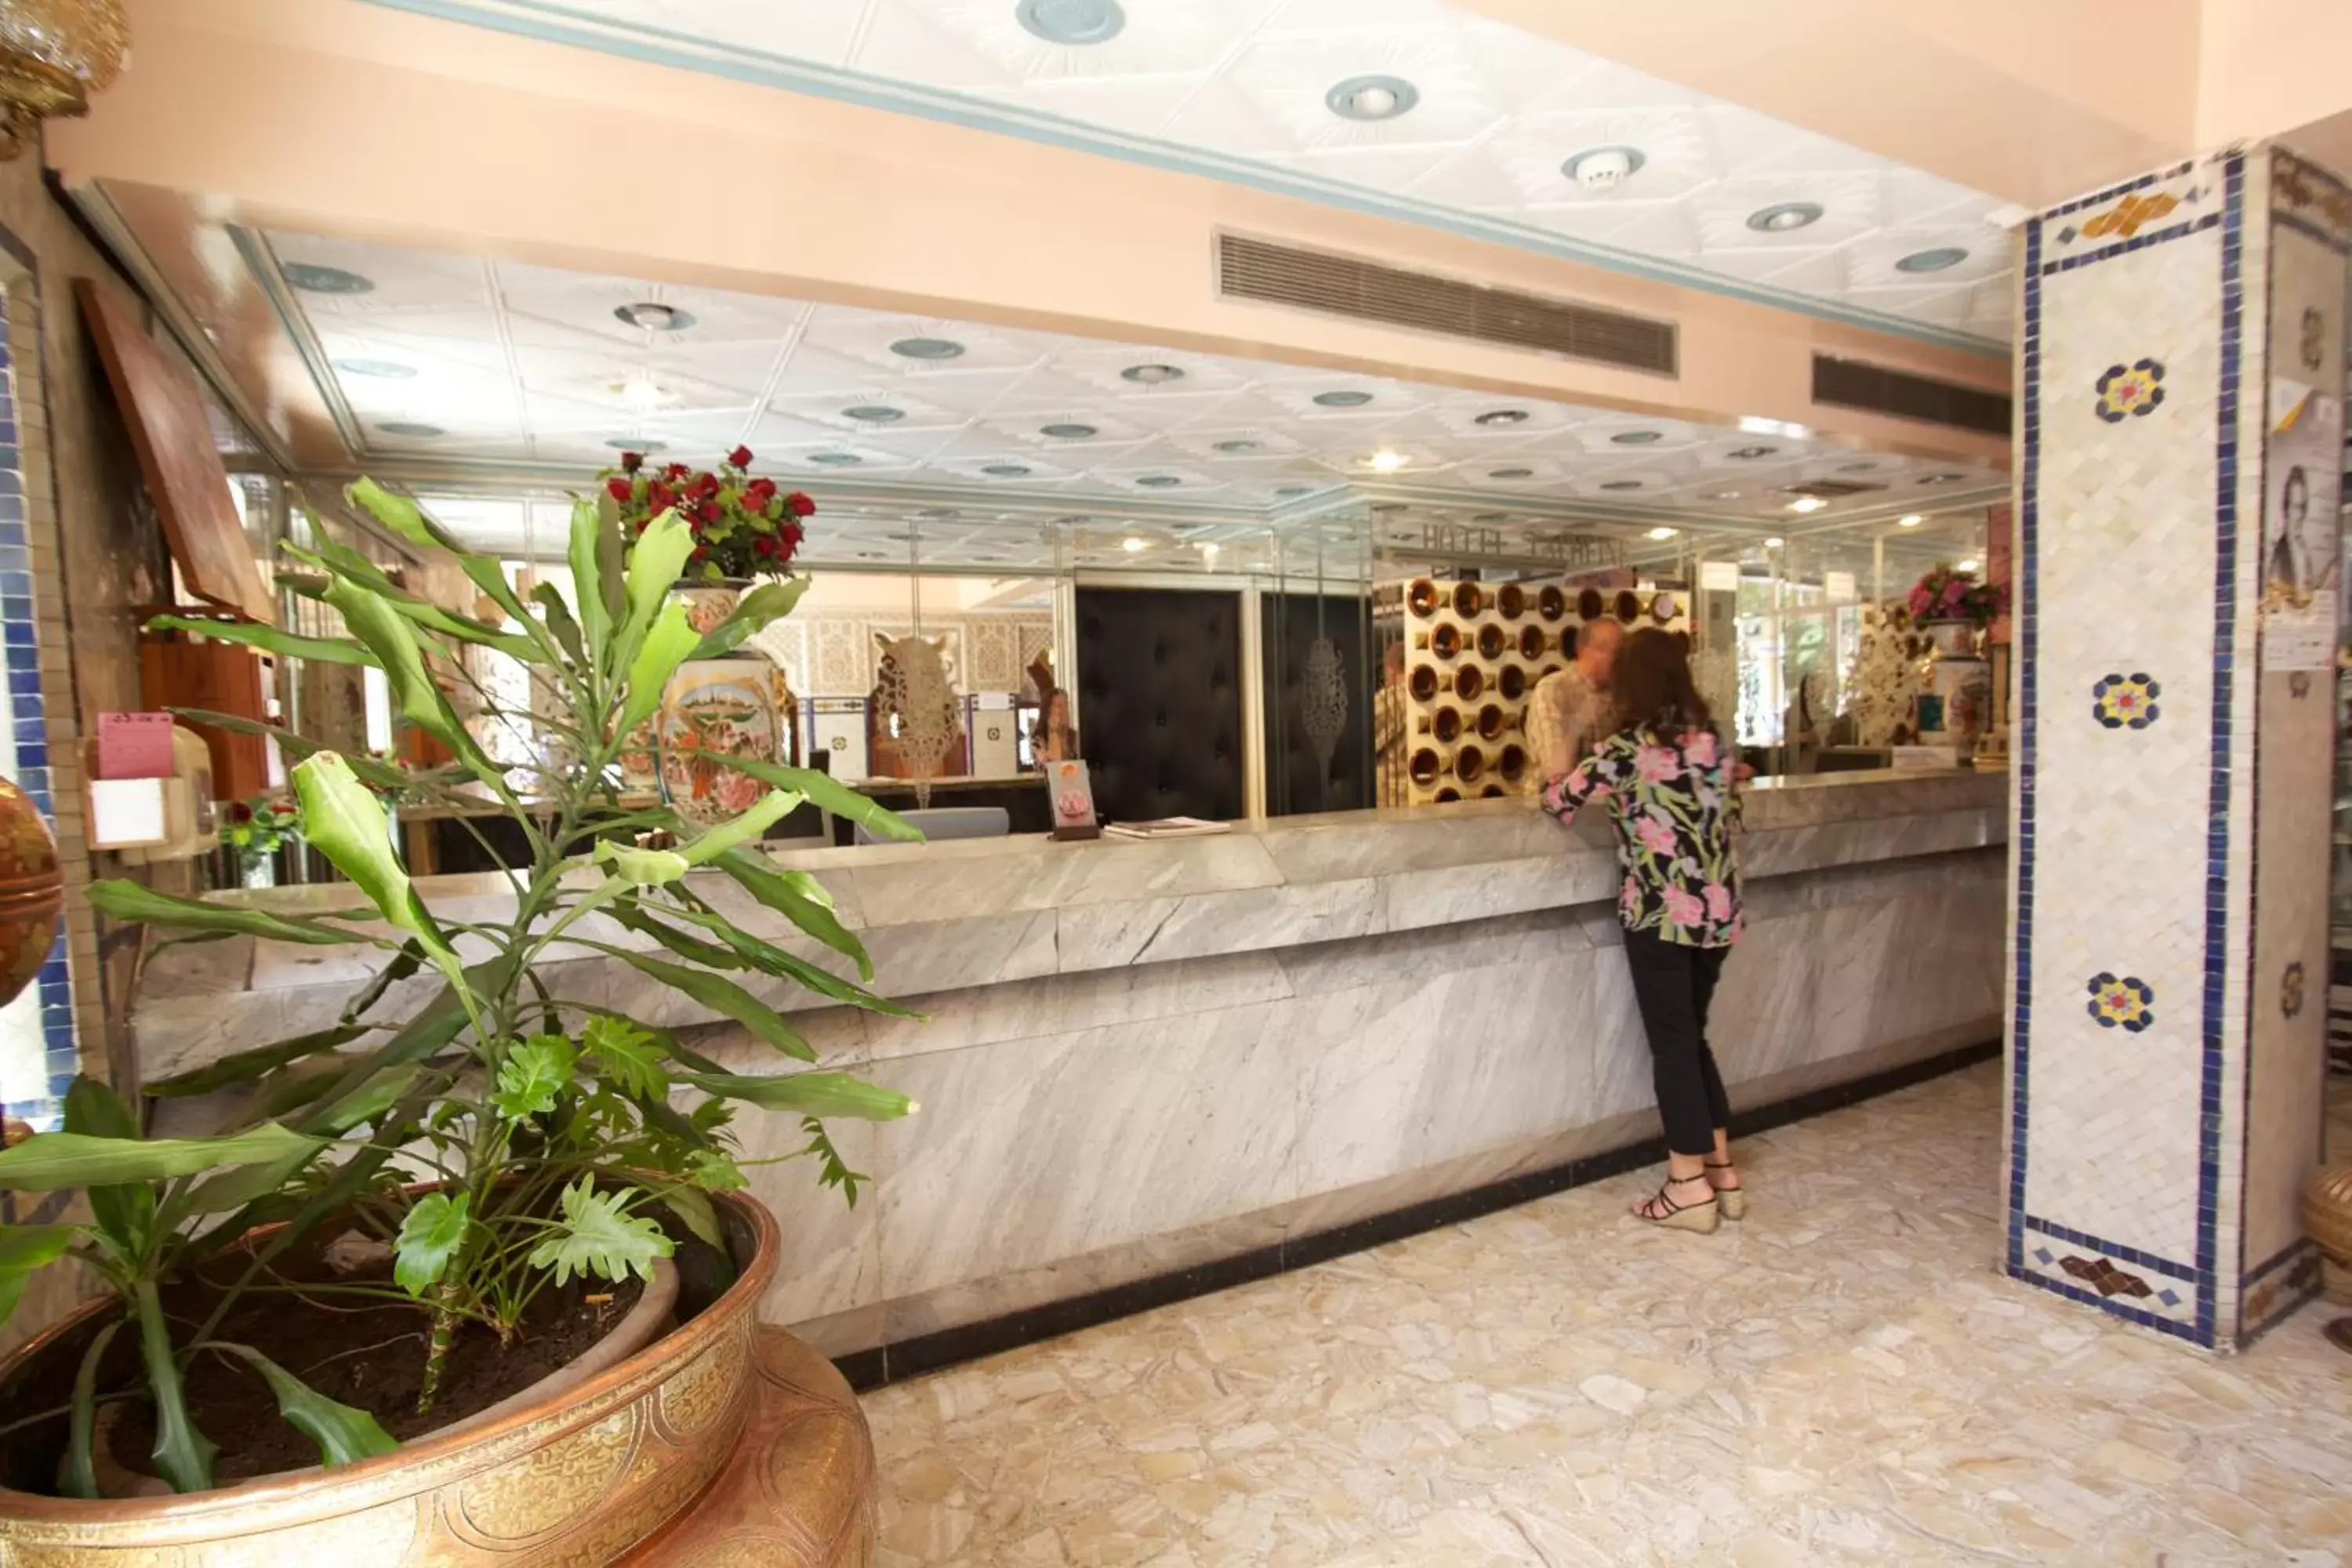 Lobby or reception, Lobby/Reception in Hotel Tachfine